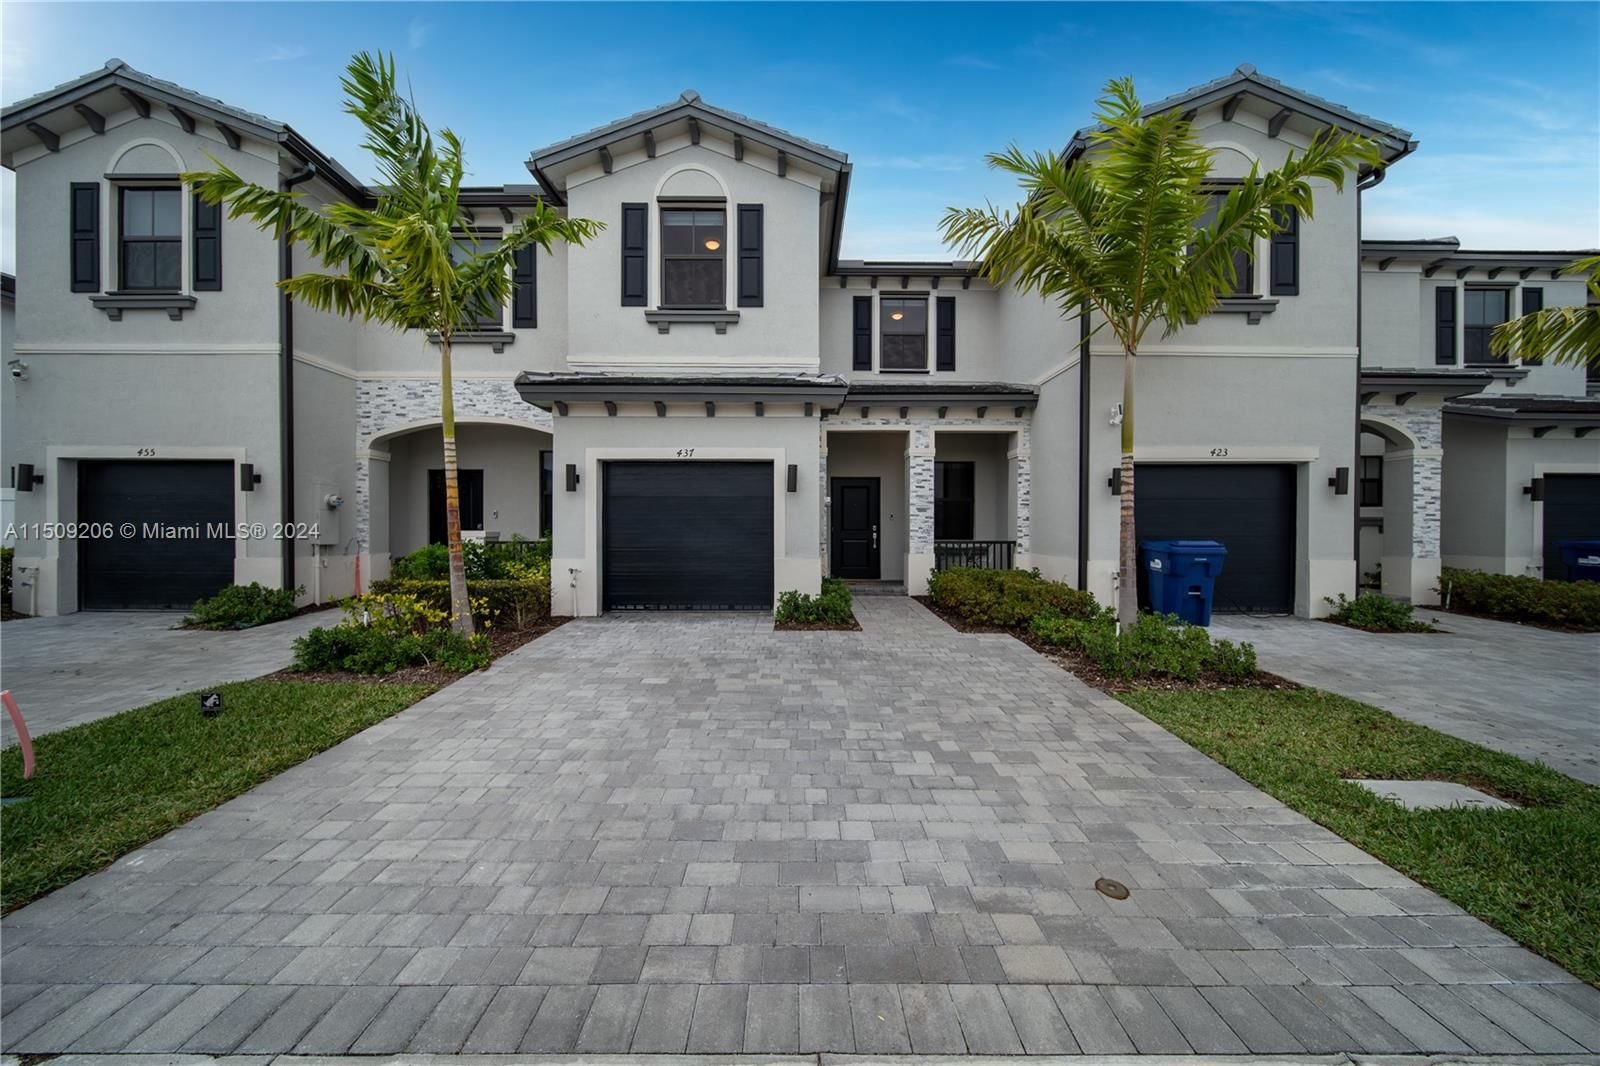 Real estate property located at 437 204th St, Miami-Dade County, VISTA LAGO, Miami Gardens, FL